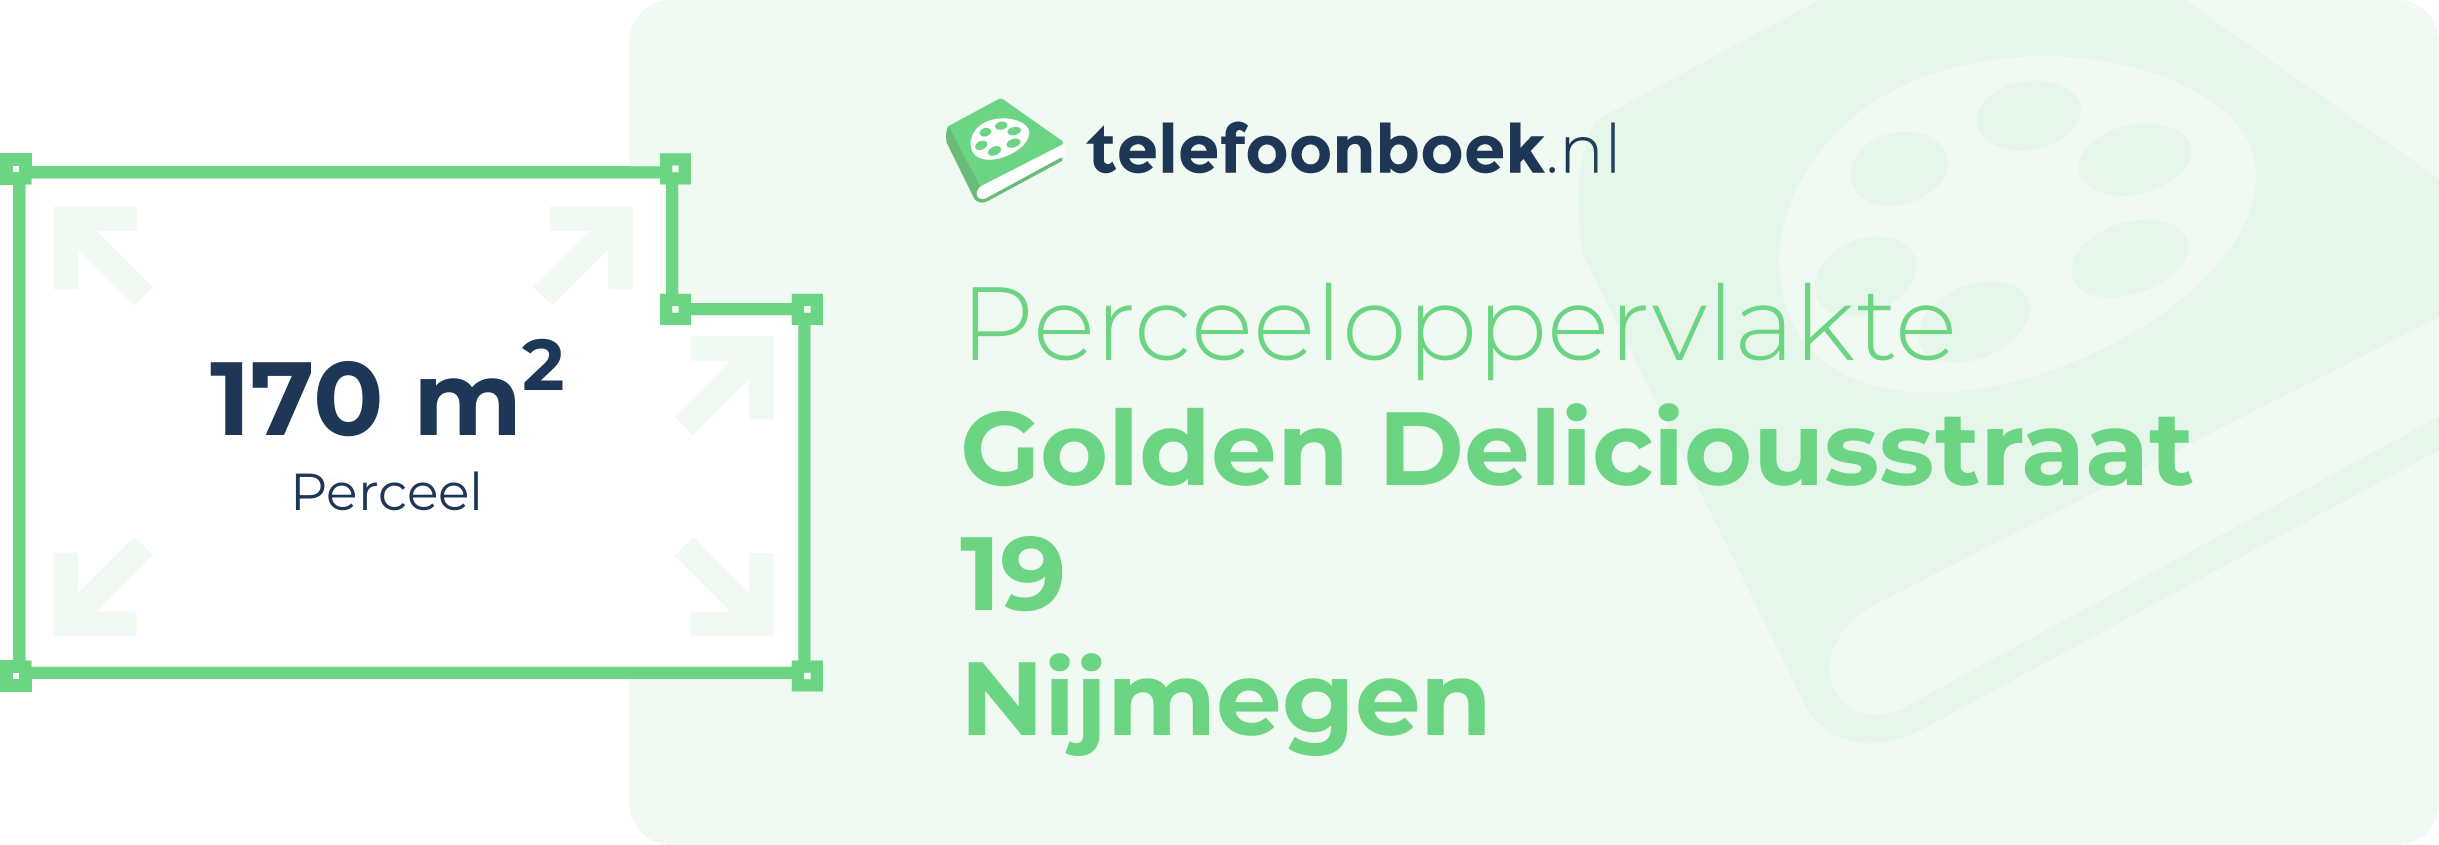 Perceeloppervlakte Golden Deliciousstraat 19 Nijmegen